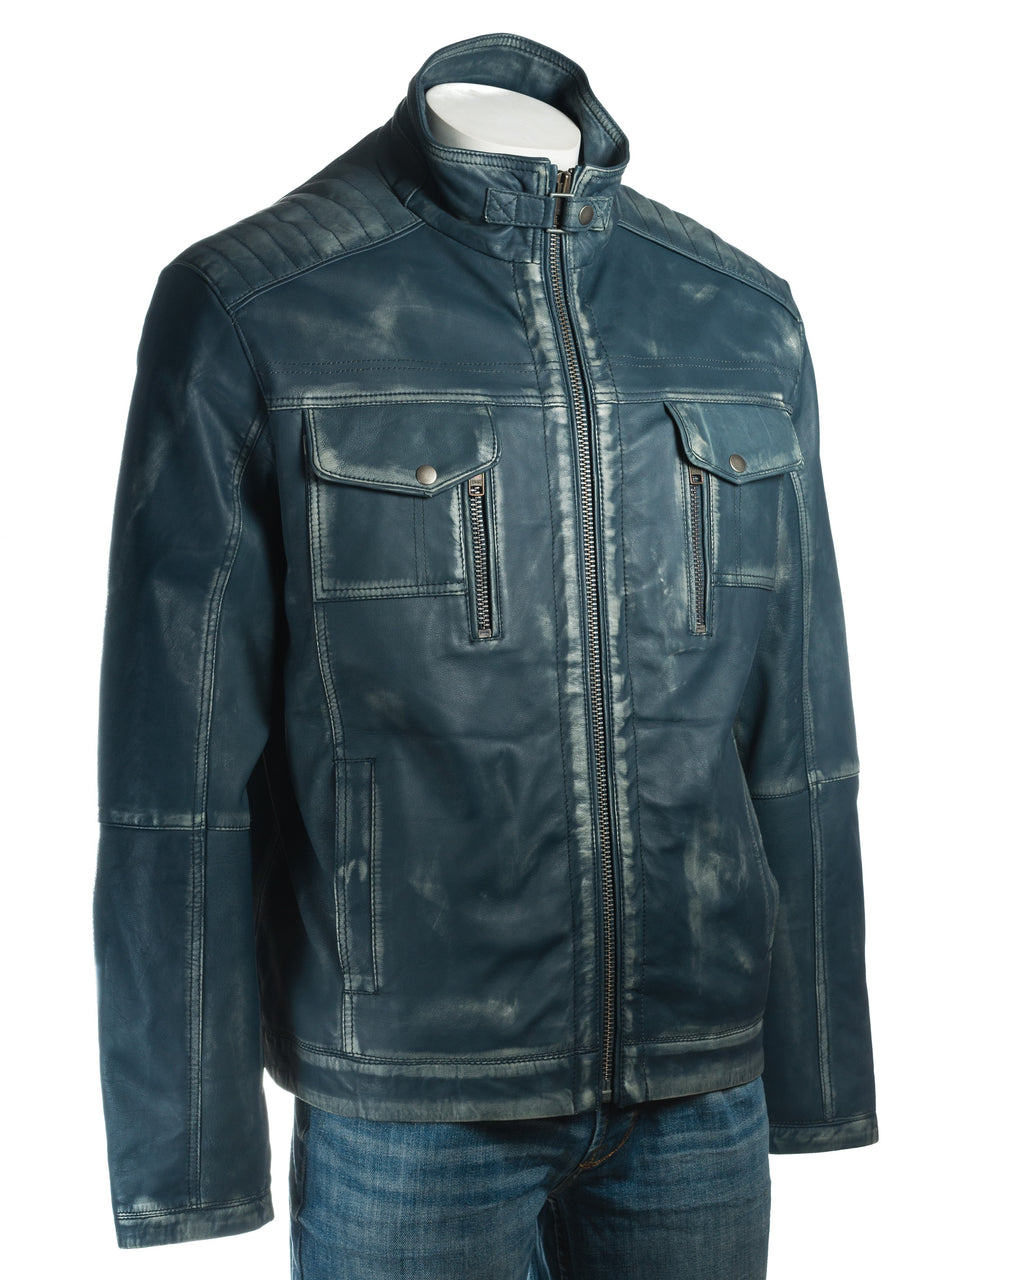 Men's Antique Blue Vintage Biker Style Leather Jacket - Dominico